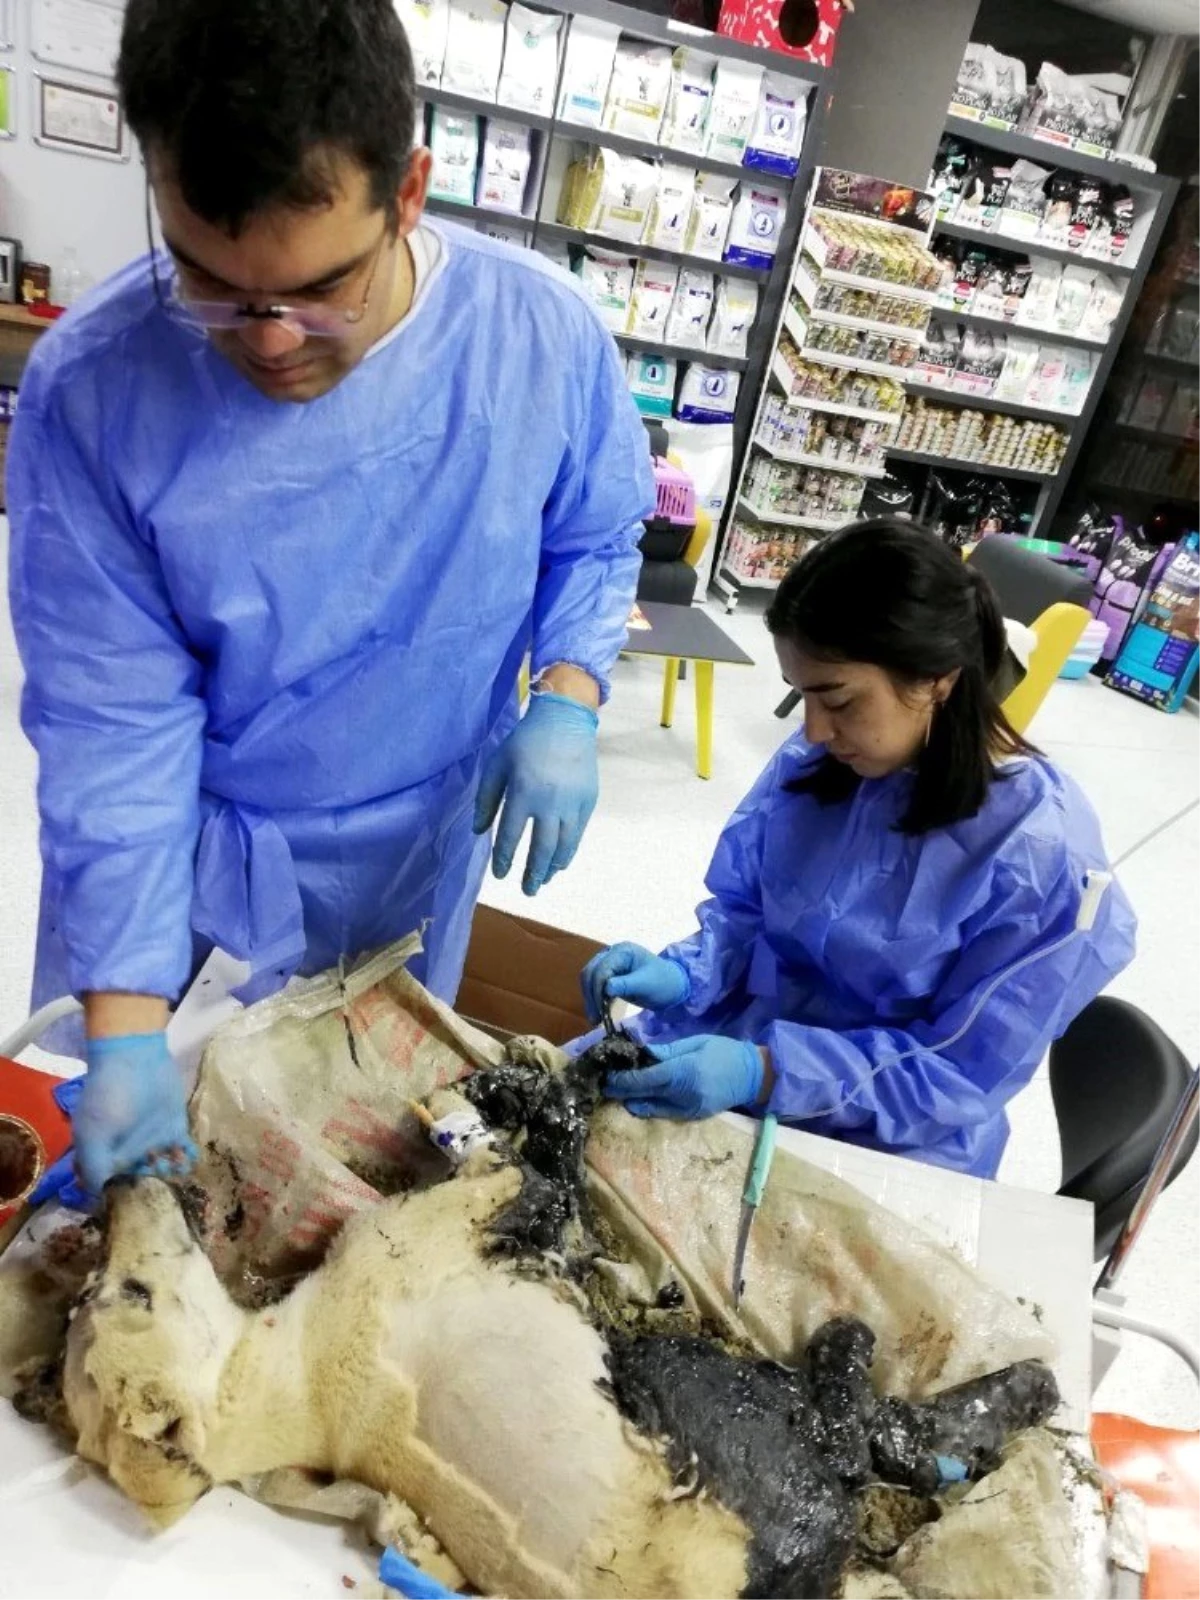 Ziftten kurtarılan kaplumbağalardan biri öldü, köpek ve diğerlerinin tedavisi sürüyor